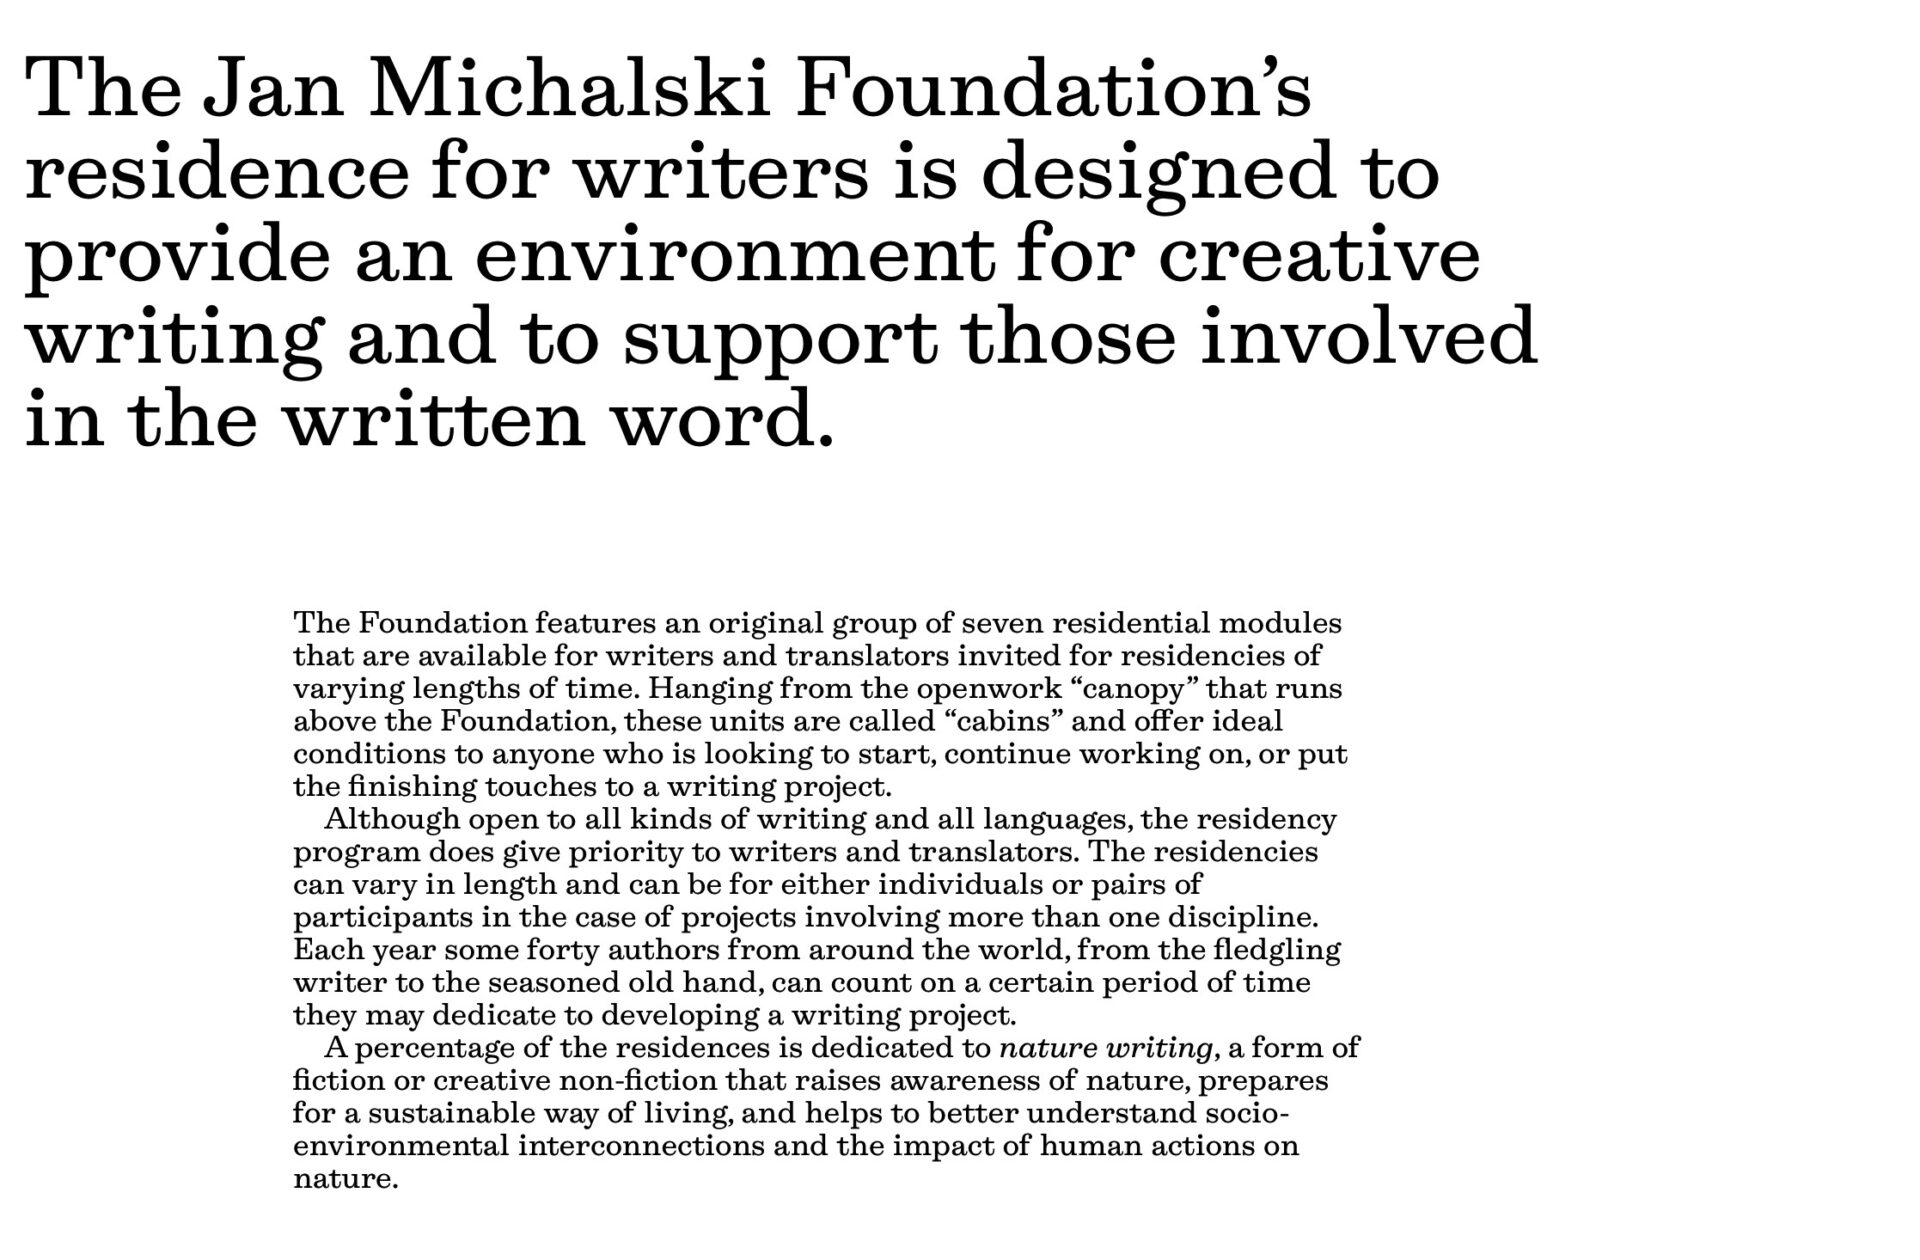 Der obige Text und weitere Information zur Fondation Jan Michalski siehe: https://fondation-janmichalski.com/fr